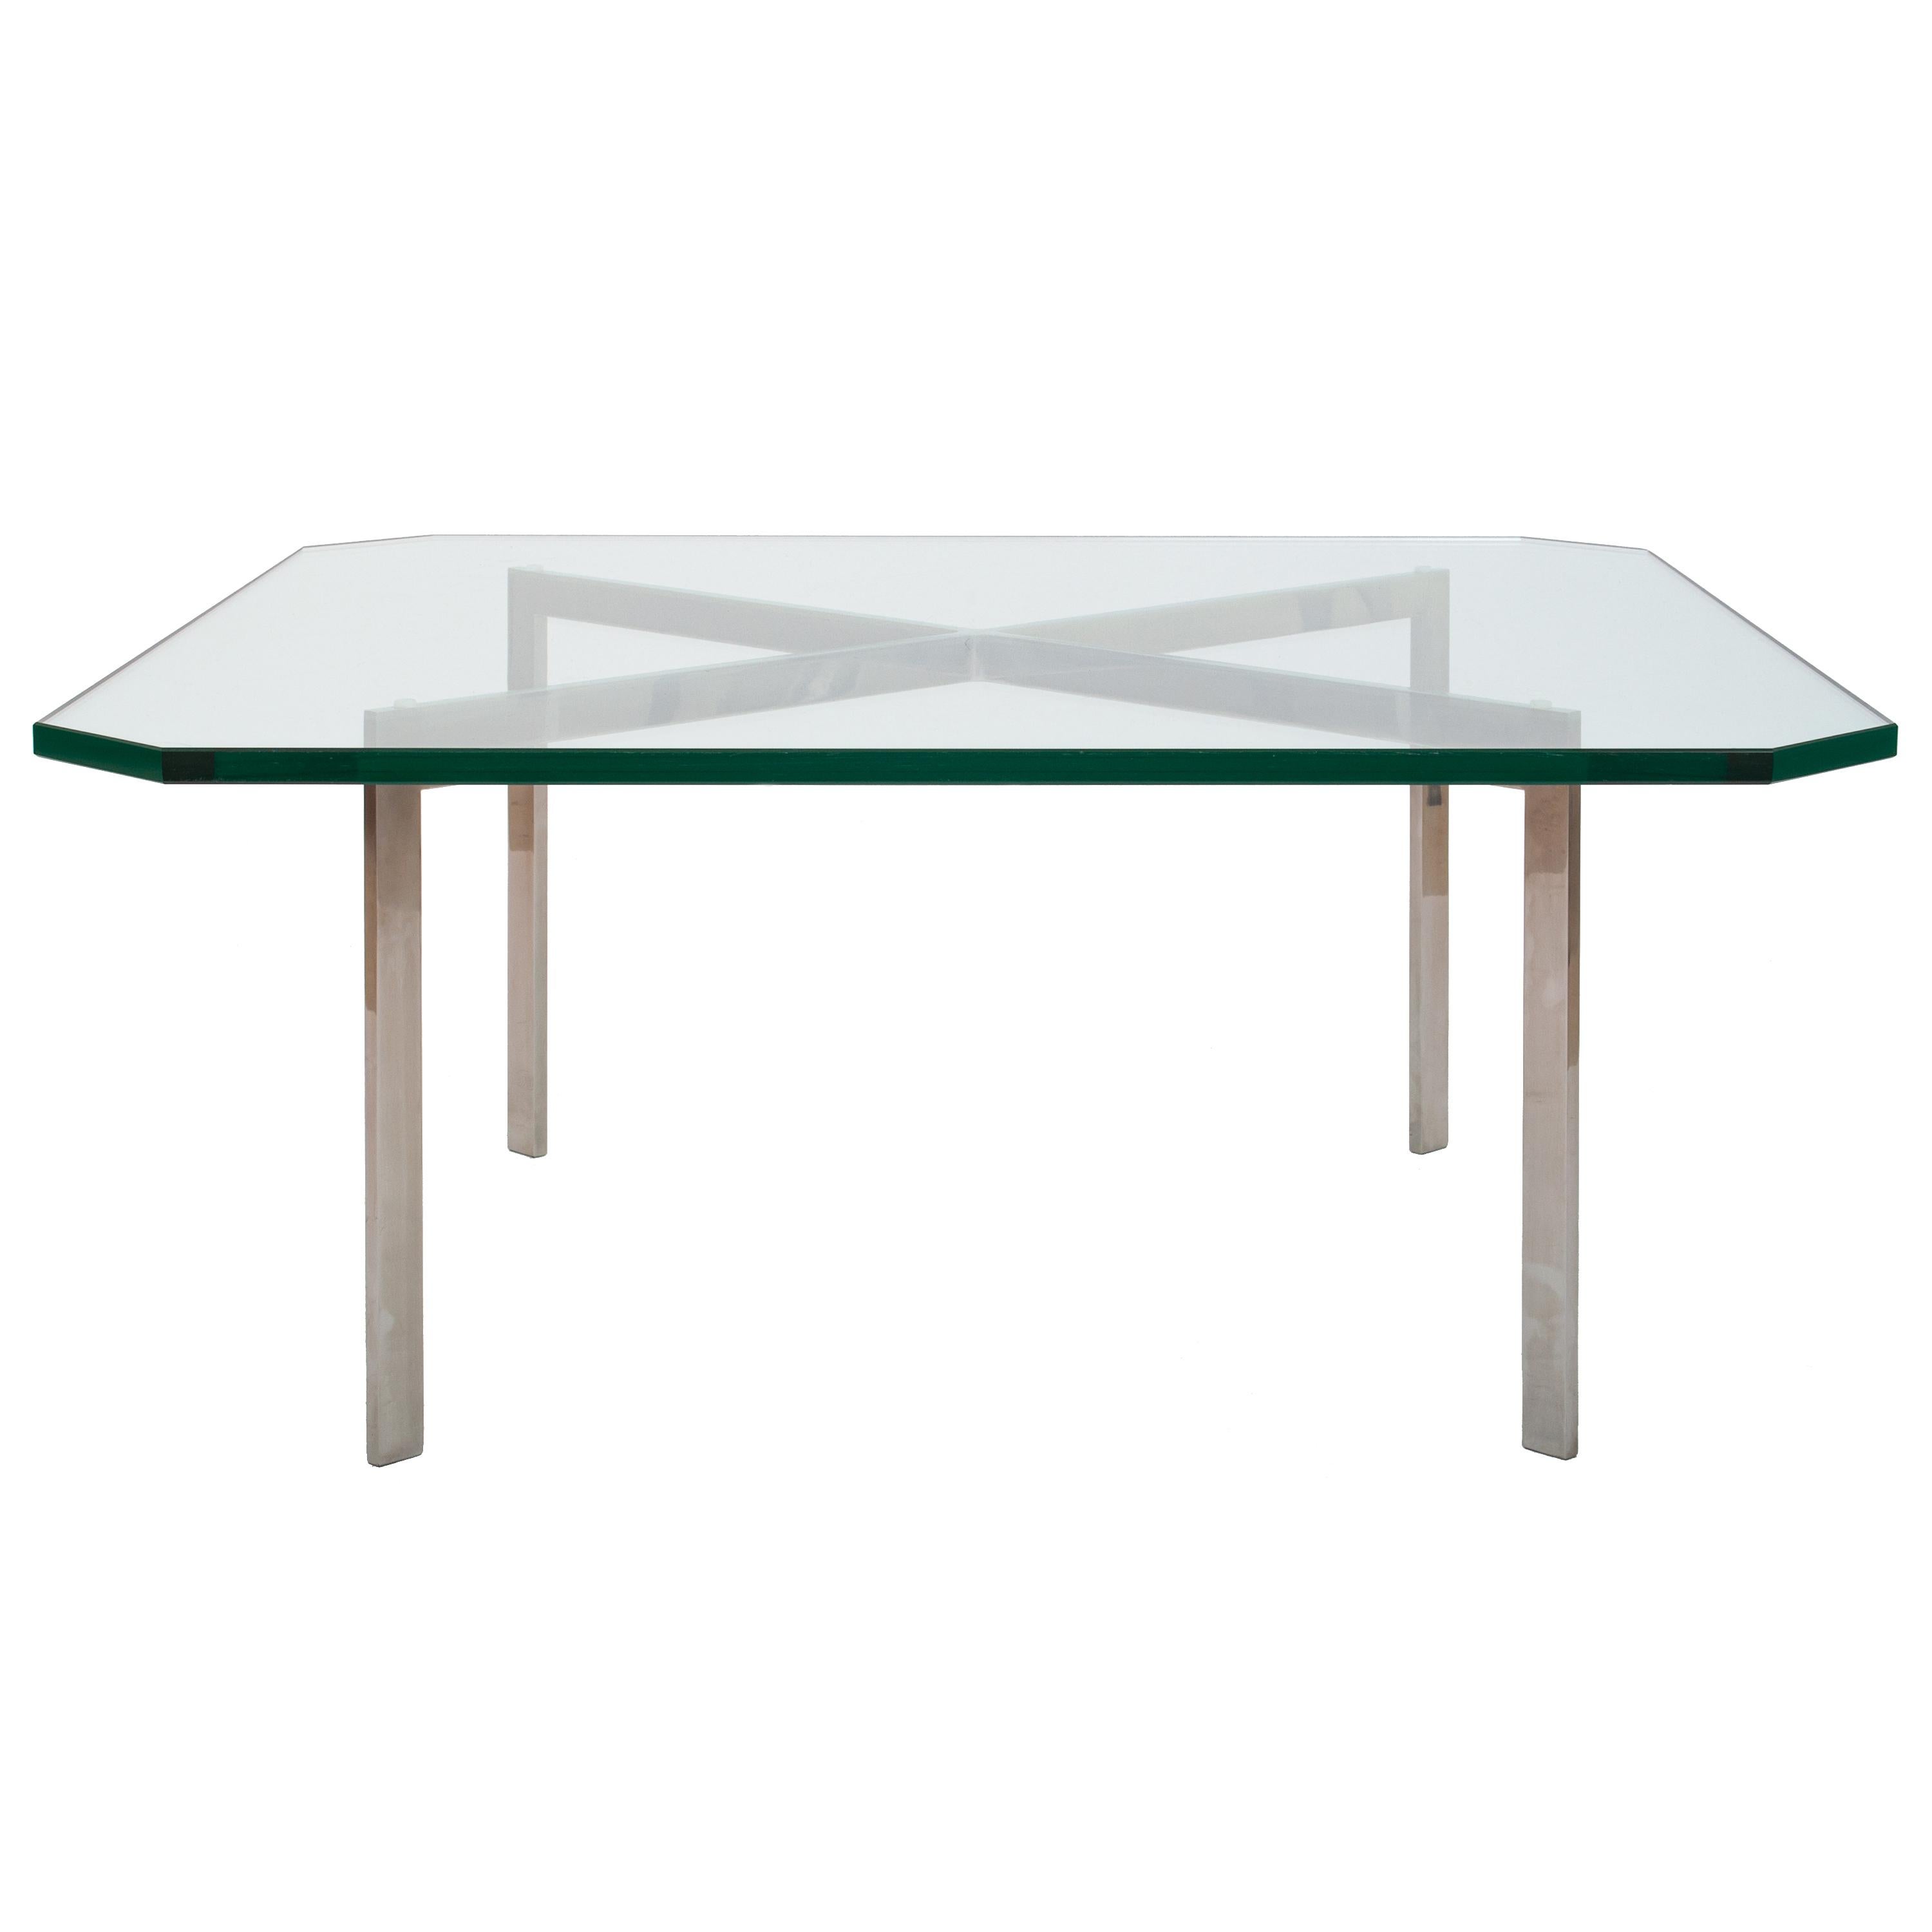 Ein früher Tisch aus der Zeit vor Knoll, 1955 Mies Van Der Rohe, 252 Barcelona.
Der Tisch wurde in den 1950er Jahren als Hochzeitsgeschenk für einen prominenten Architekten der Westküste gekauft. Sowohl der Edelstahl-Tischsockel als auch die